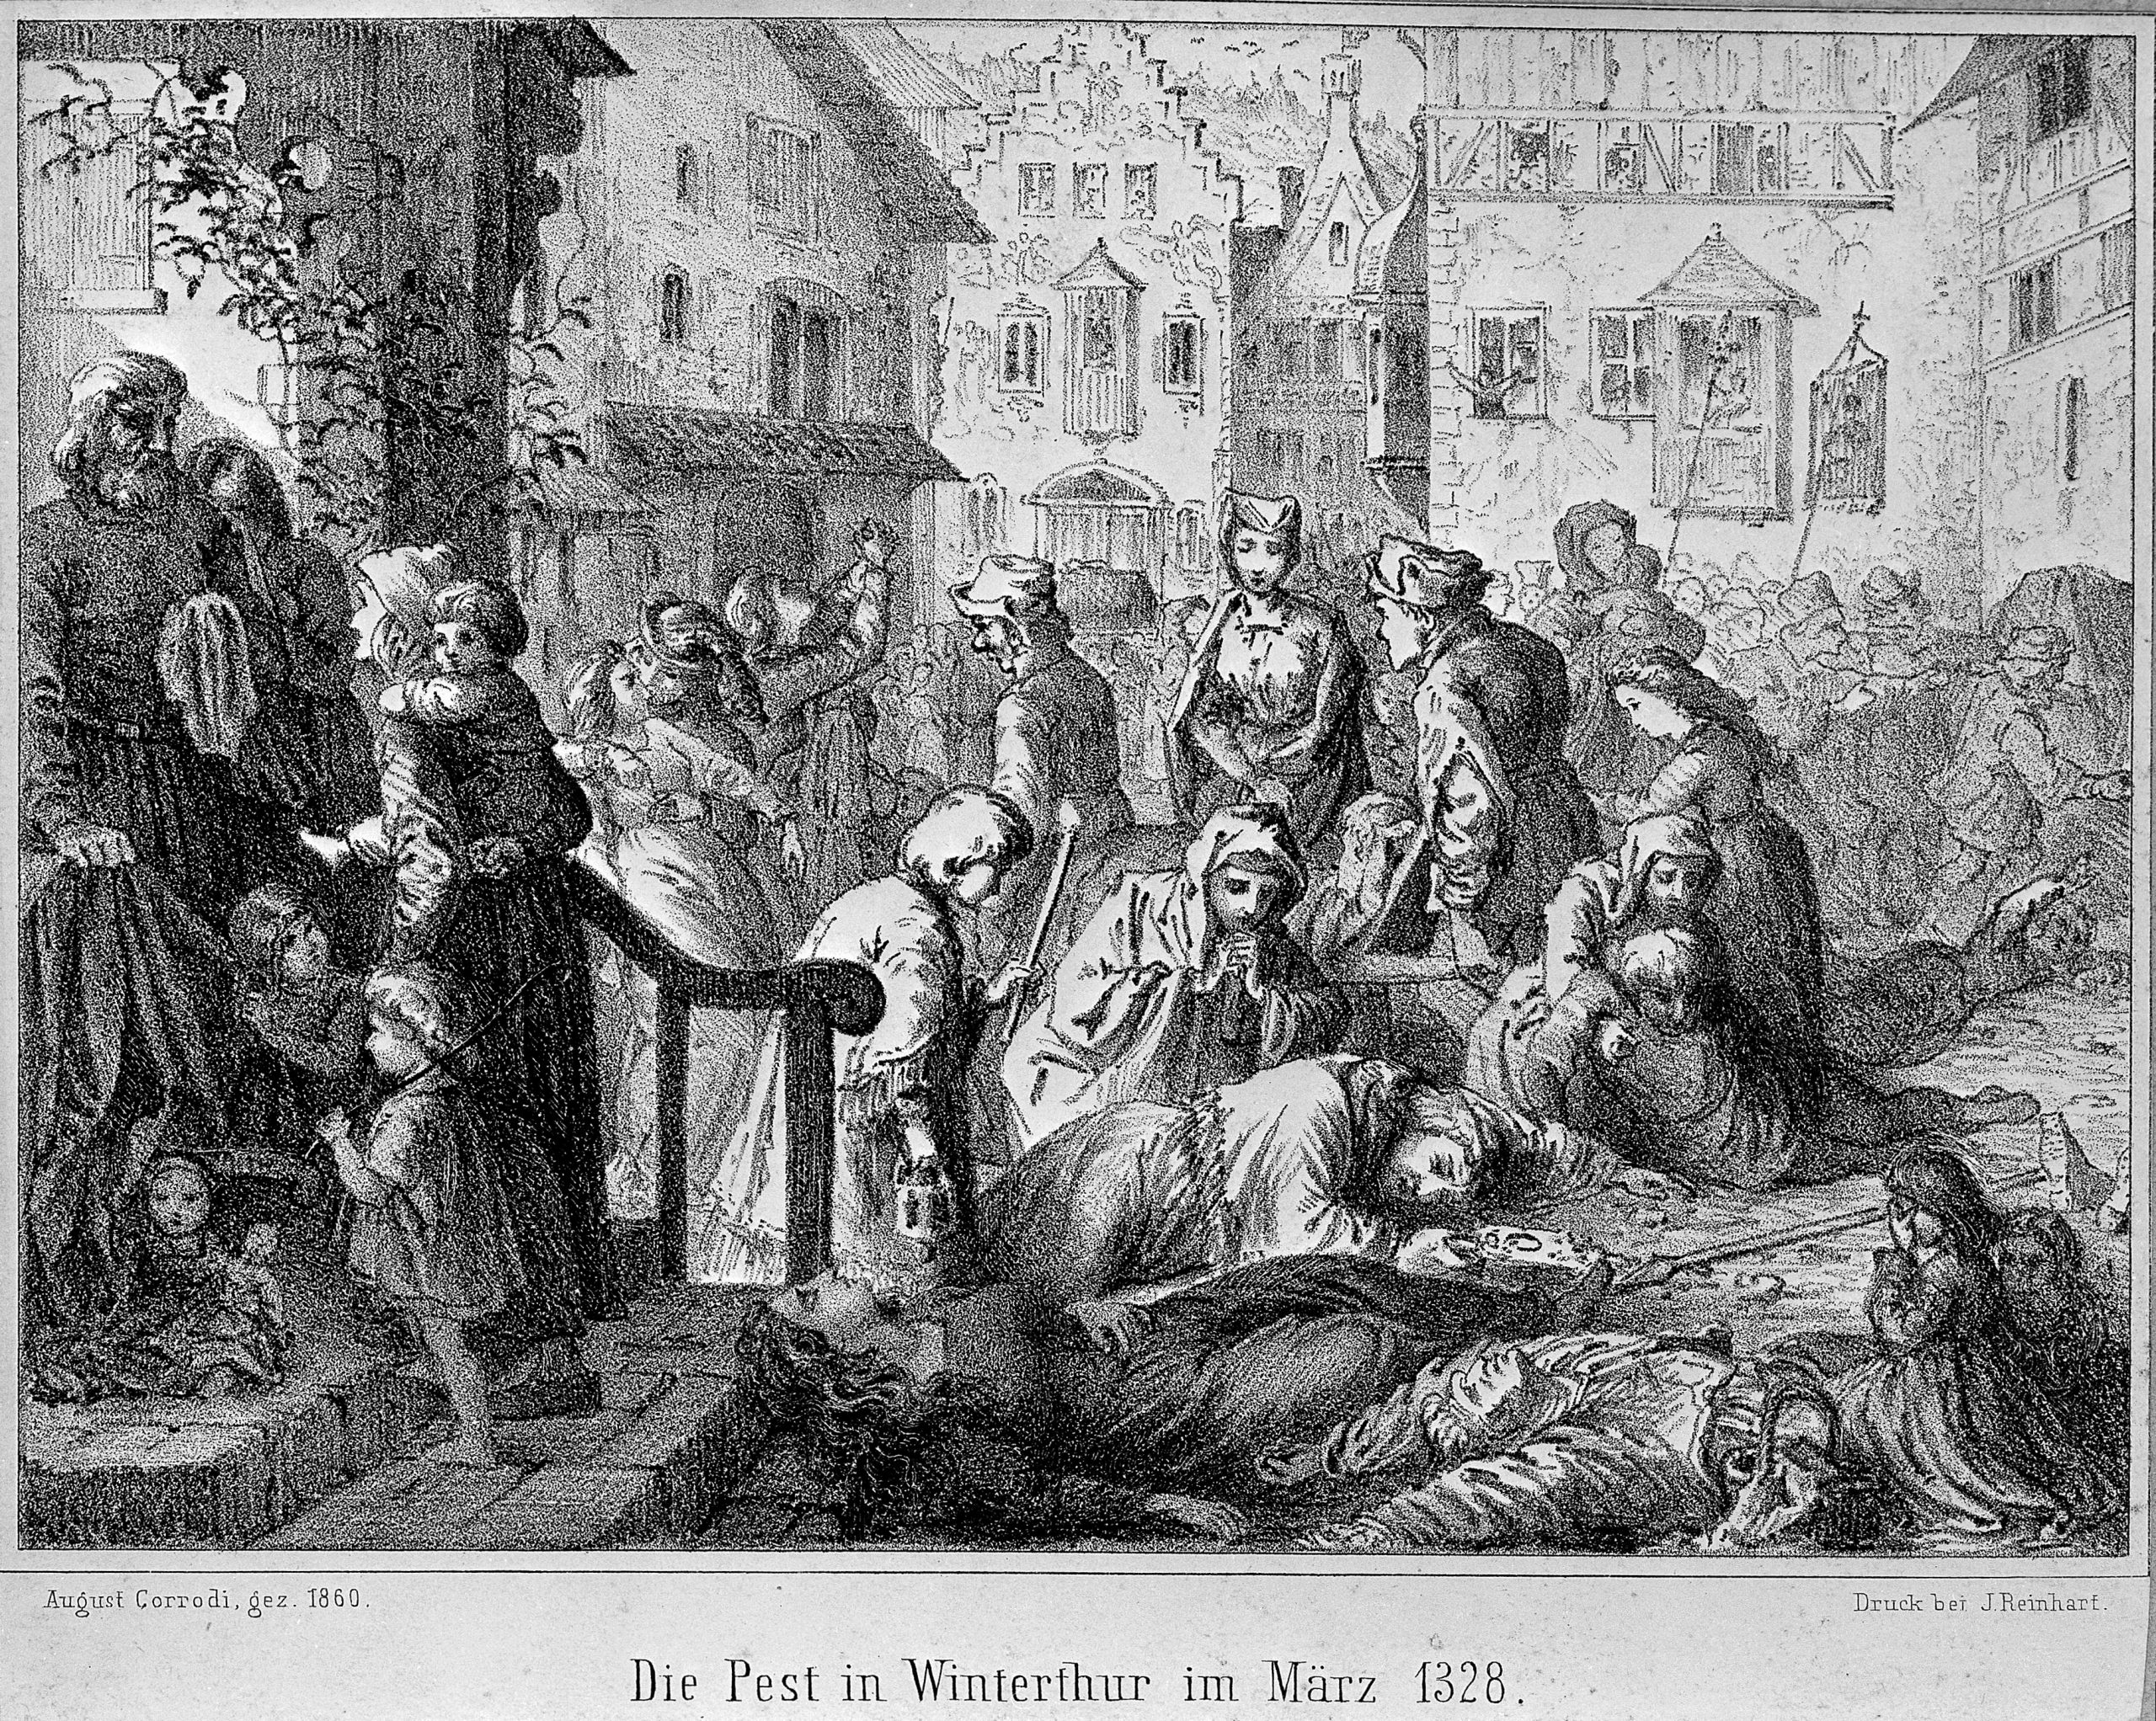 Ilustração em preto e branco de A. Corrodi, de 1860, com adultos e crianças chorando sob corpos estirados no chão. Há o texto: “Die Pest in Winterthur im März 1328